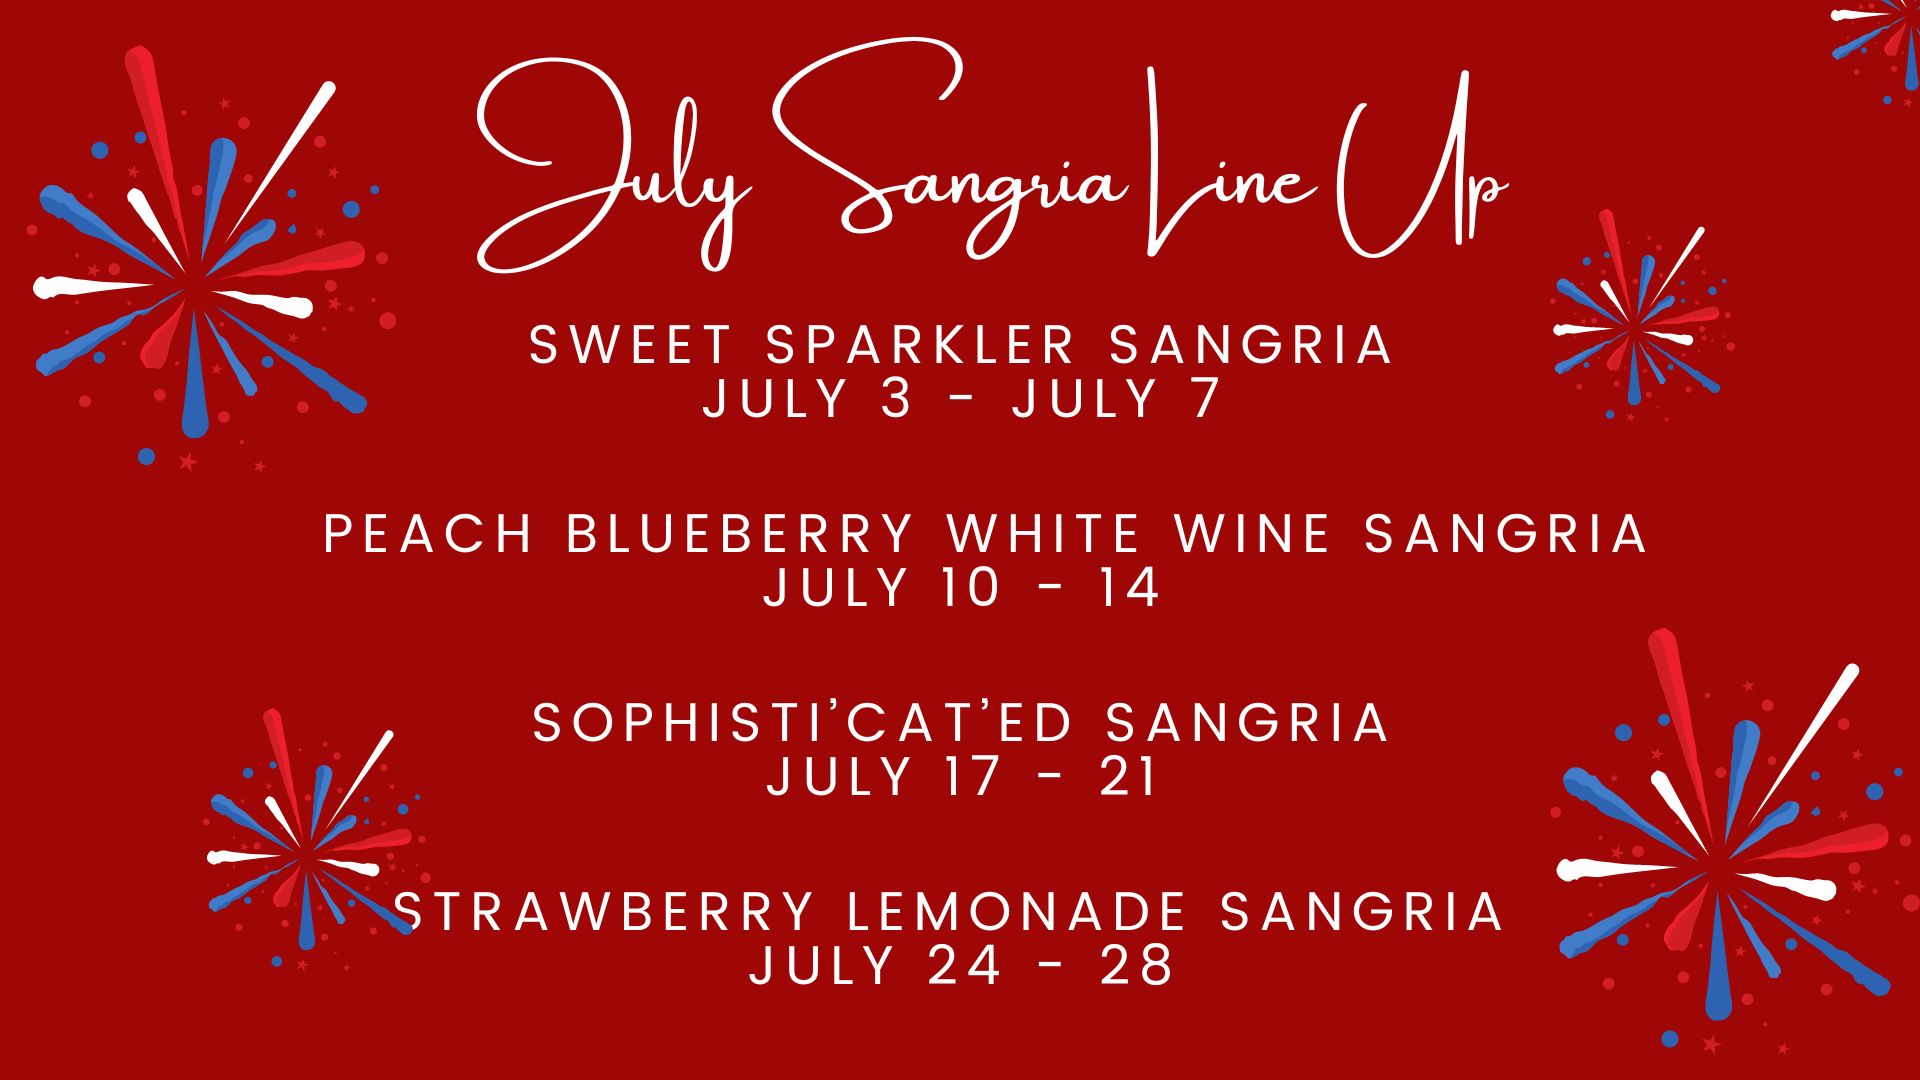 July Sangria Line Up